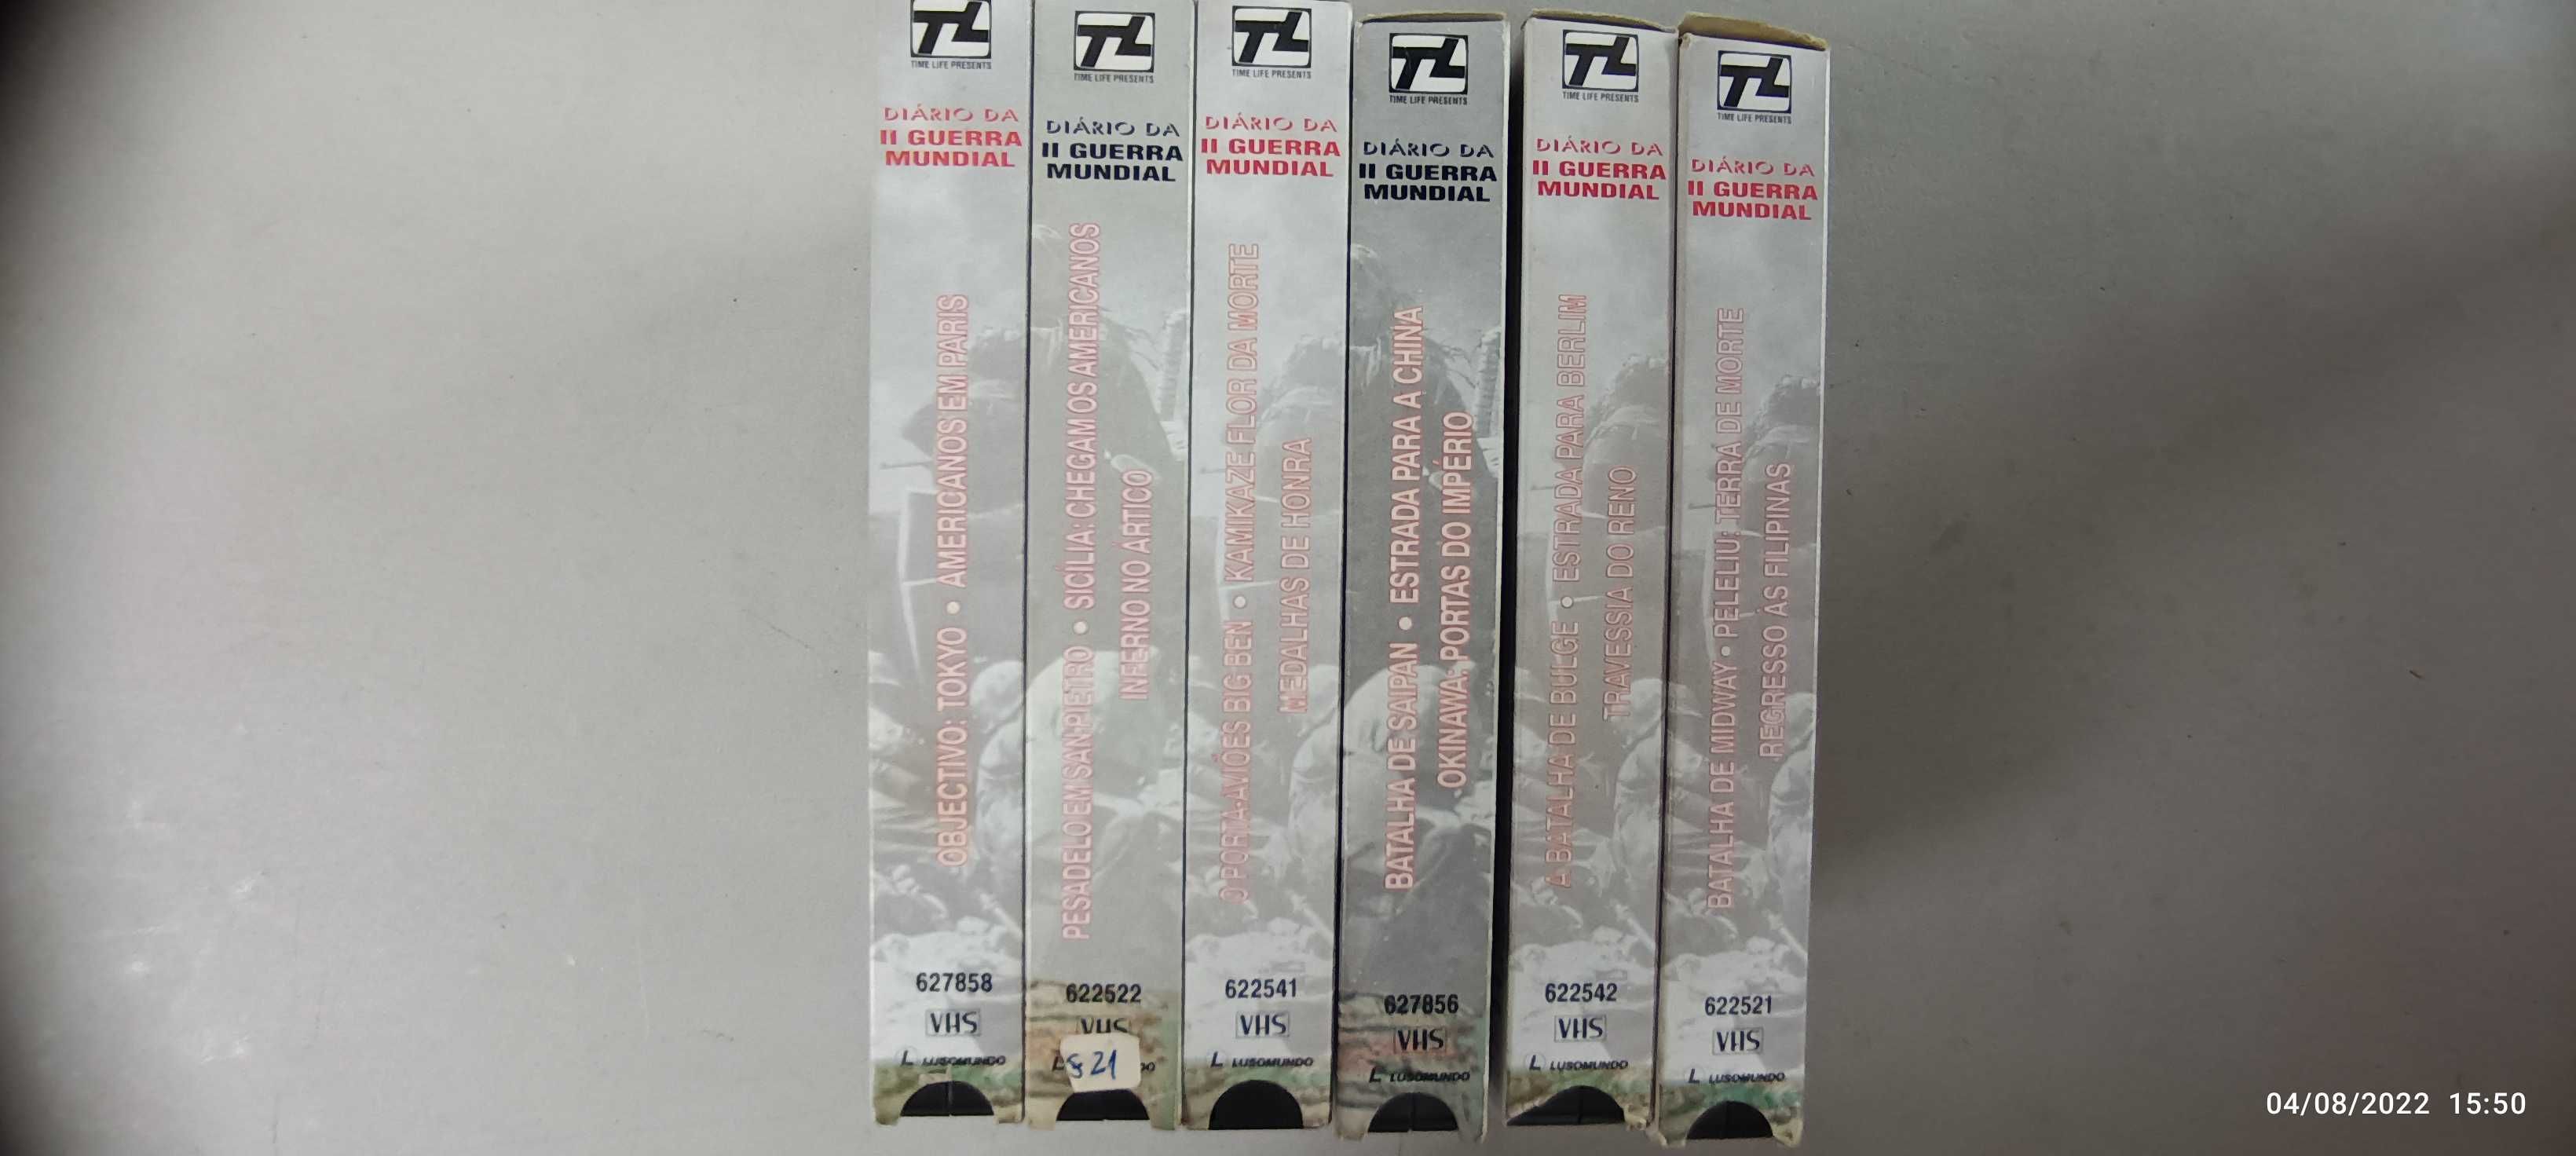 VHS - Diário da 2 guerra mundial